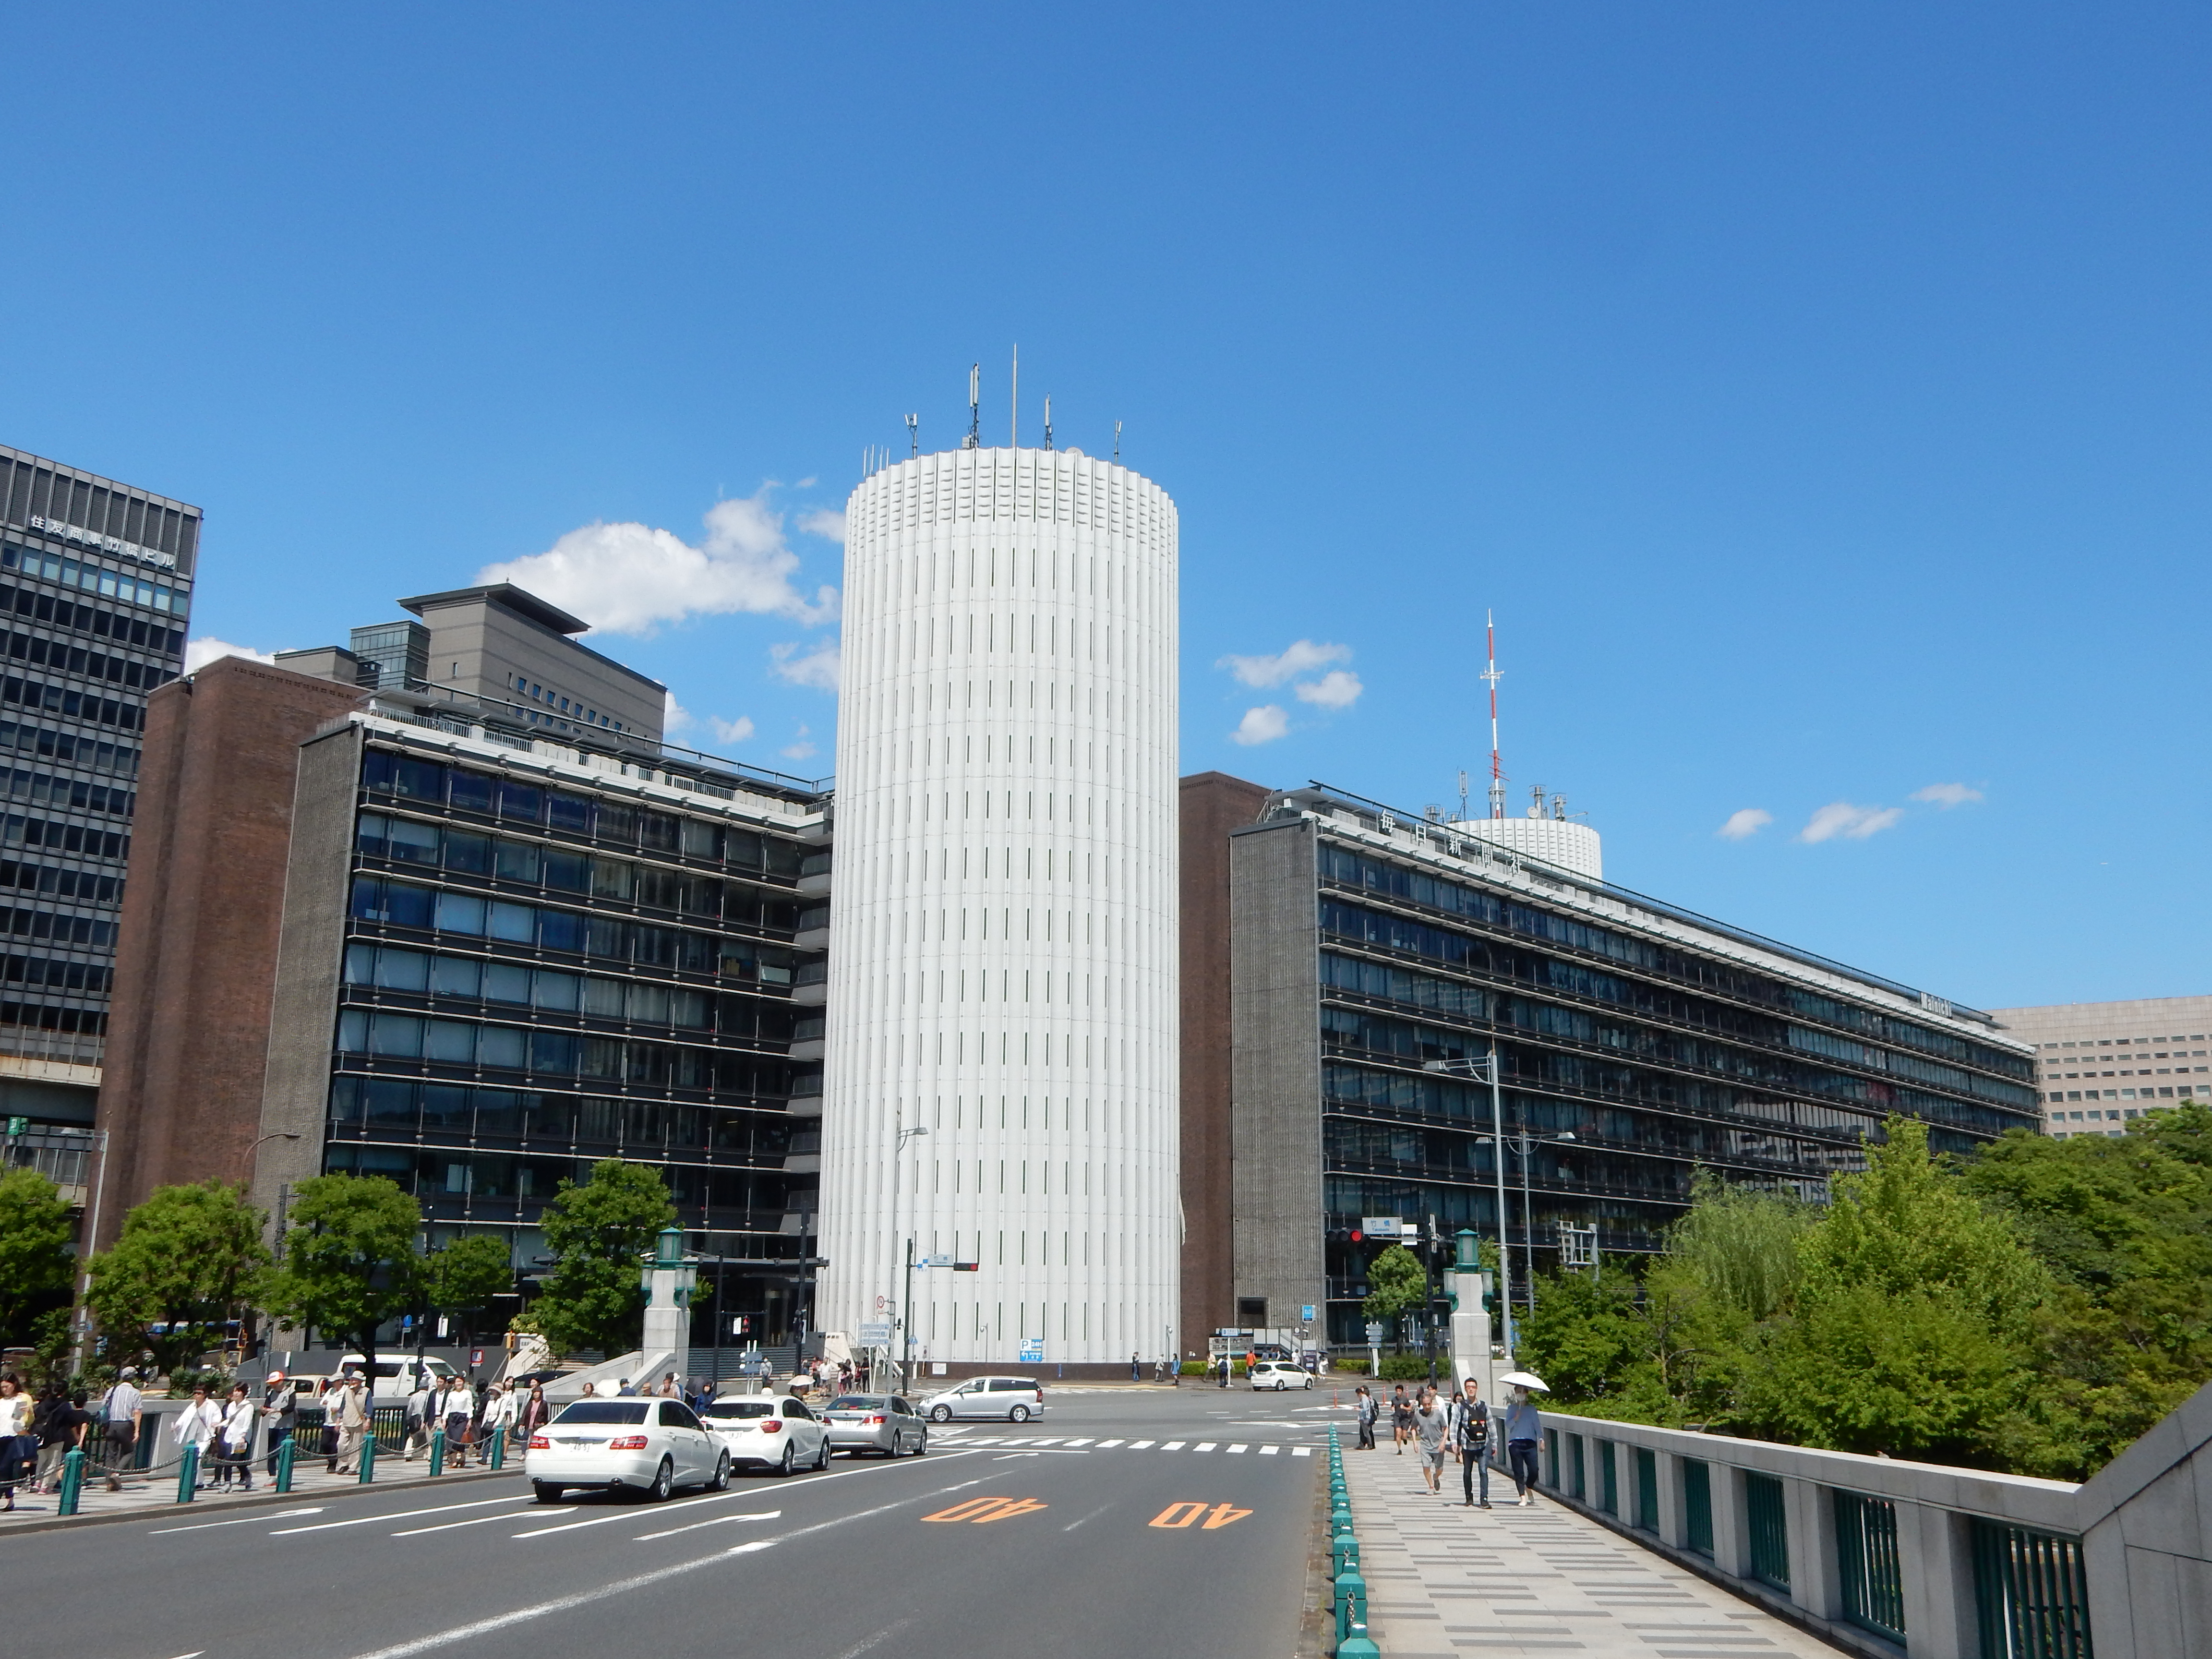 同社は、日本を代表する新聞社の一つである。長い歴史を持つ毎日新聞は、2015年6月に電子新聞サービスである『デジタル毎日』をスタート。